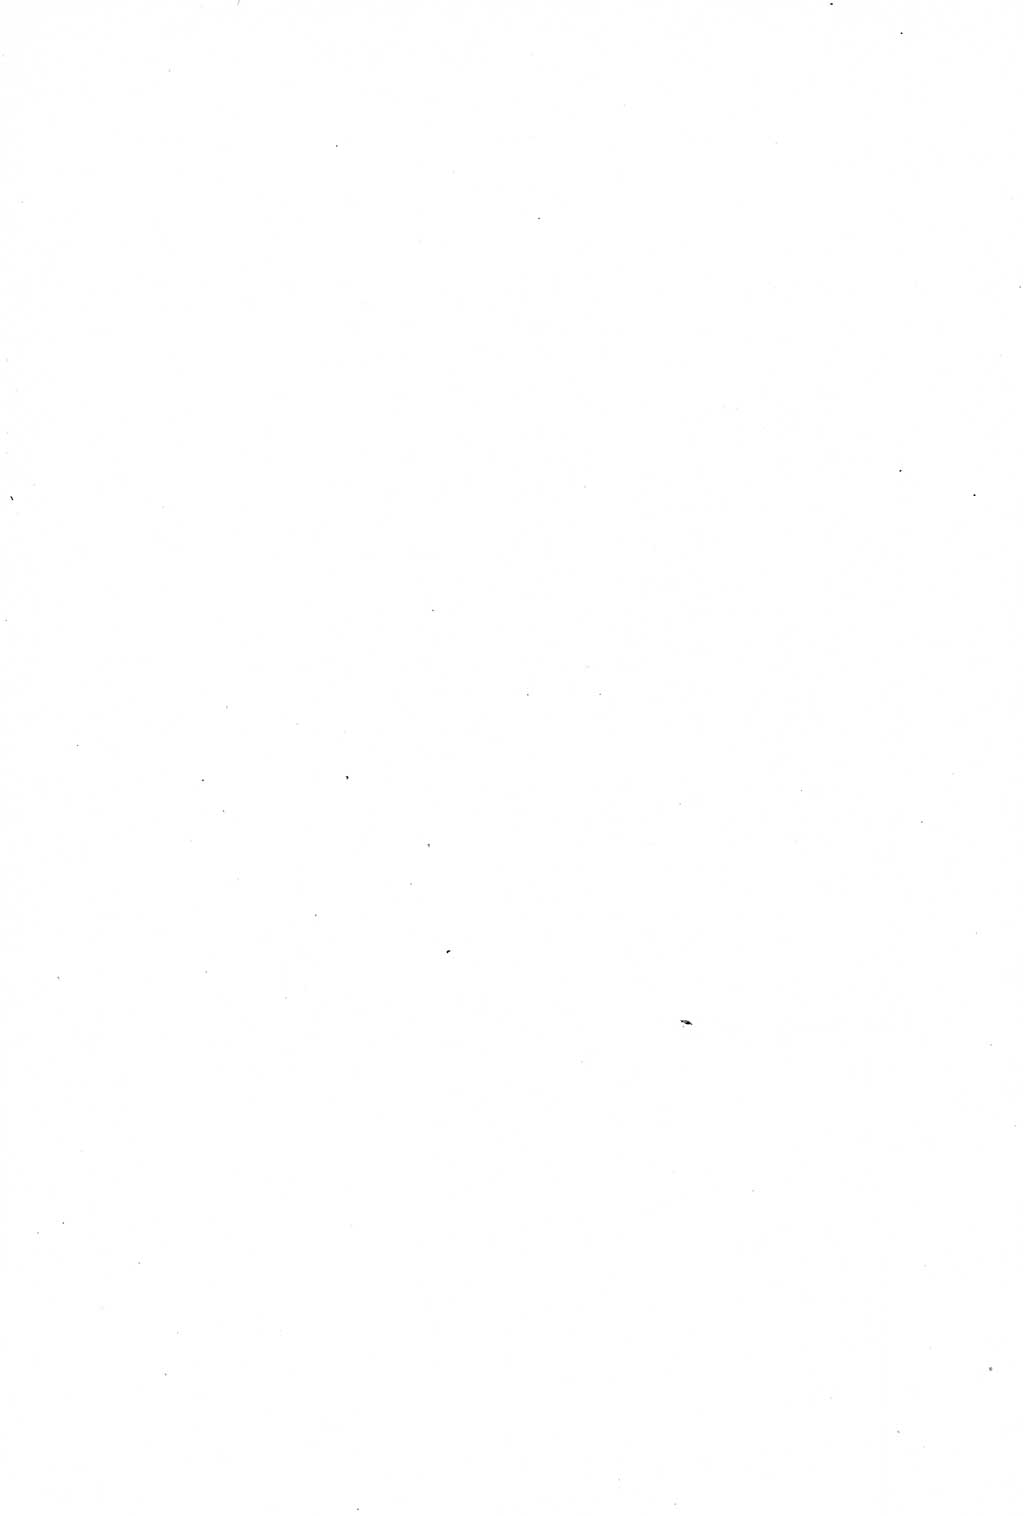 Strafprozessuale und taktisch-methodische Grundfragen der Freiheitsentziehung im Ermittlungsverfahren [Deutsche Demokratische Republik (DDR)] 1982, Seite 160 (Strafproz. Grundfr. EV DDR 1982, S. 160)